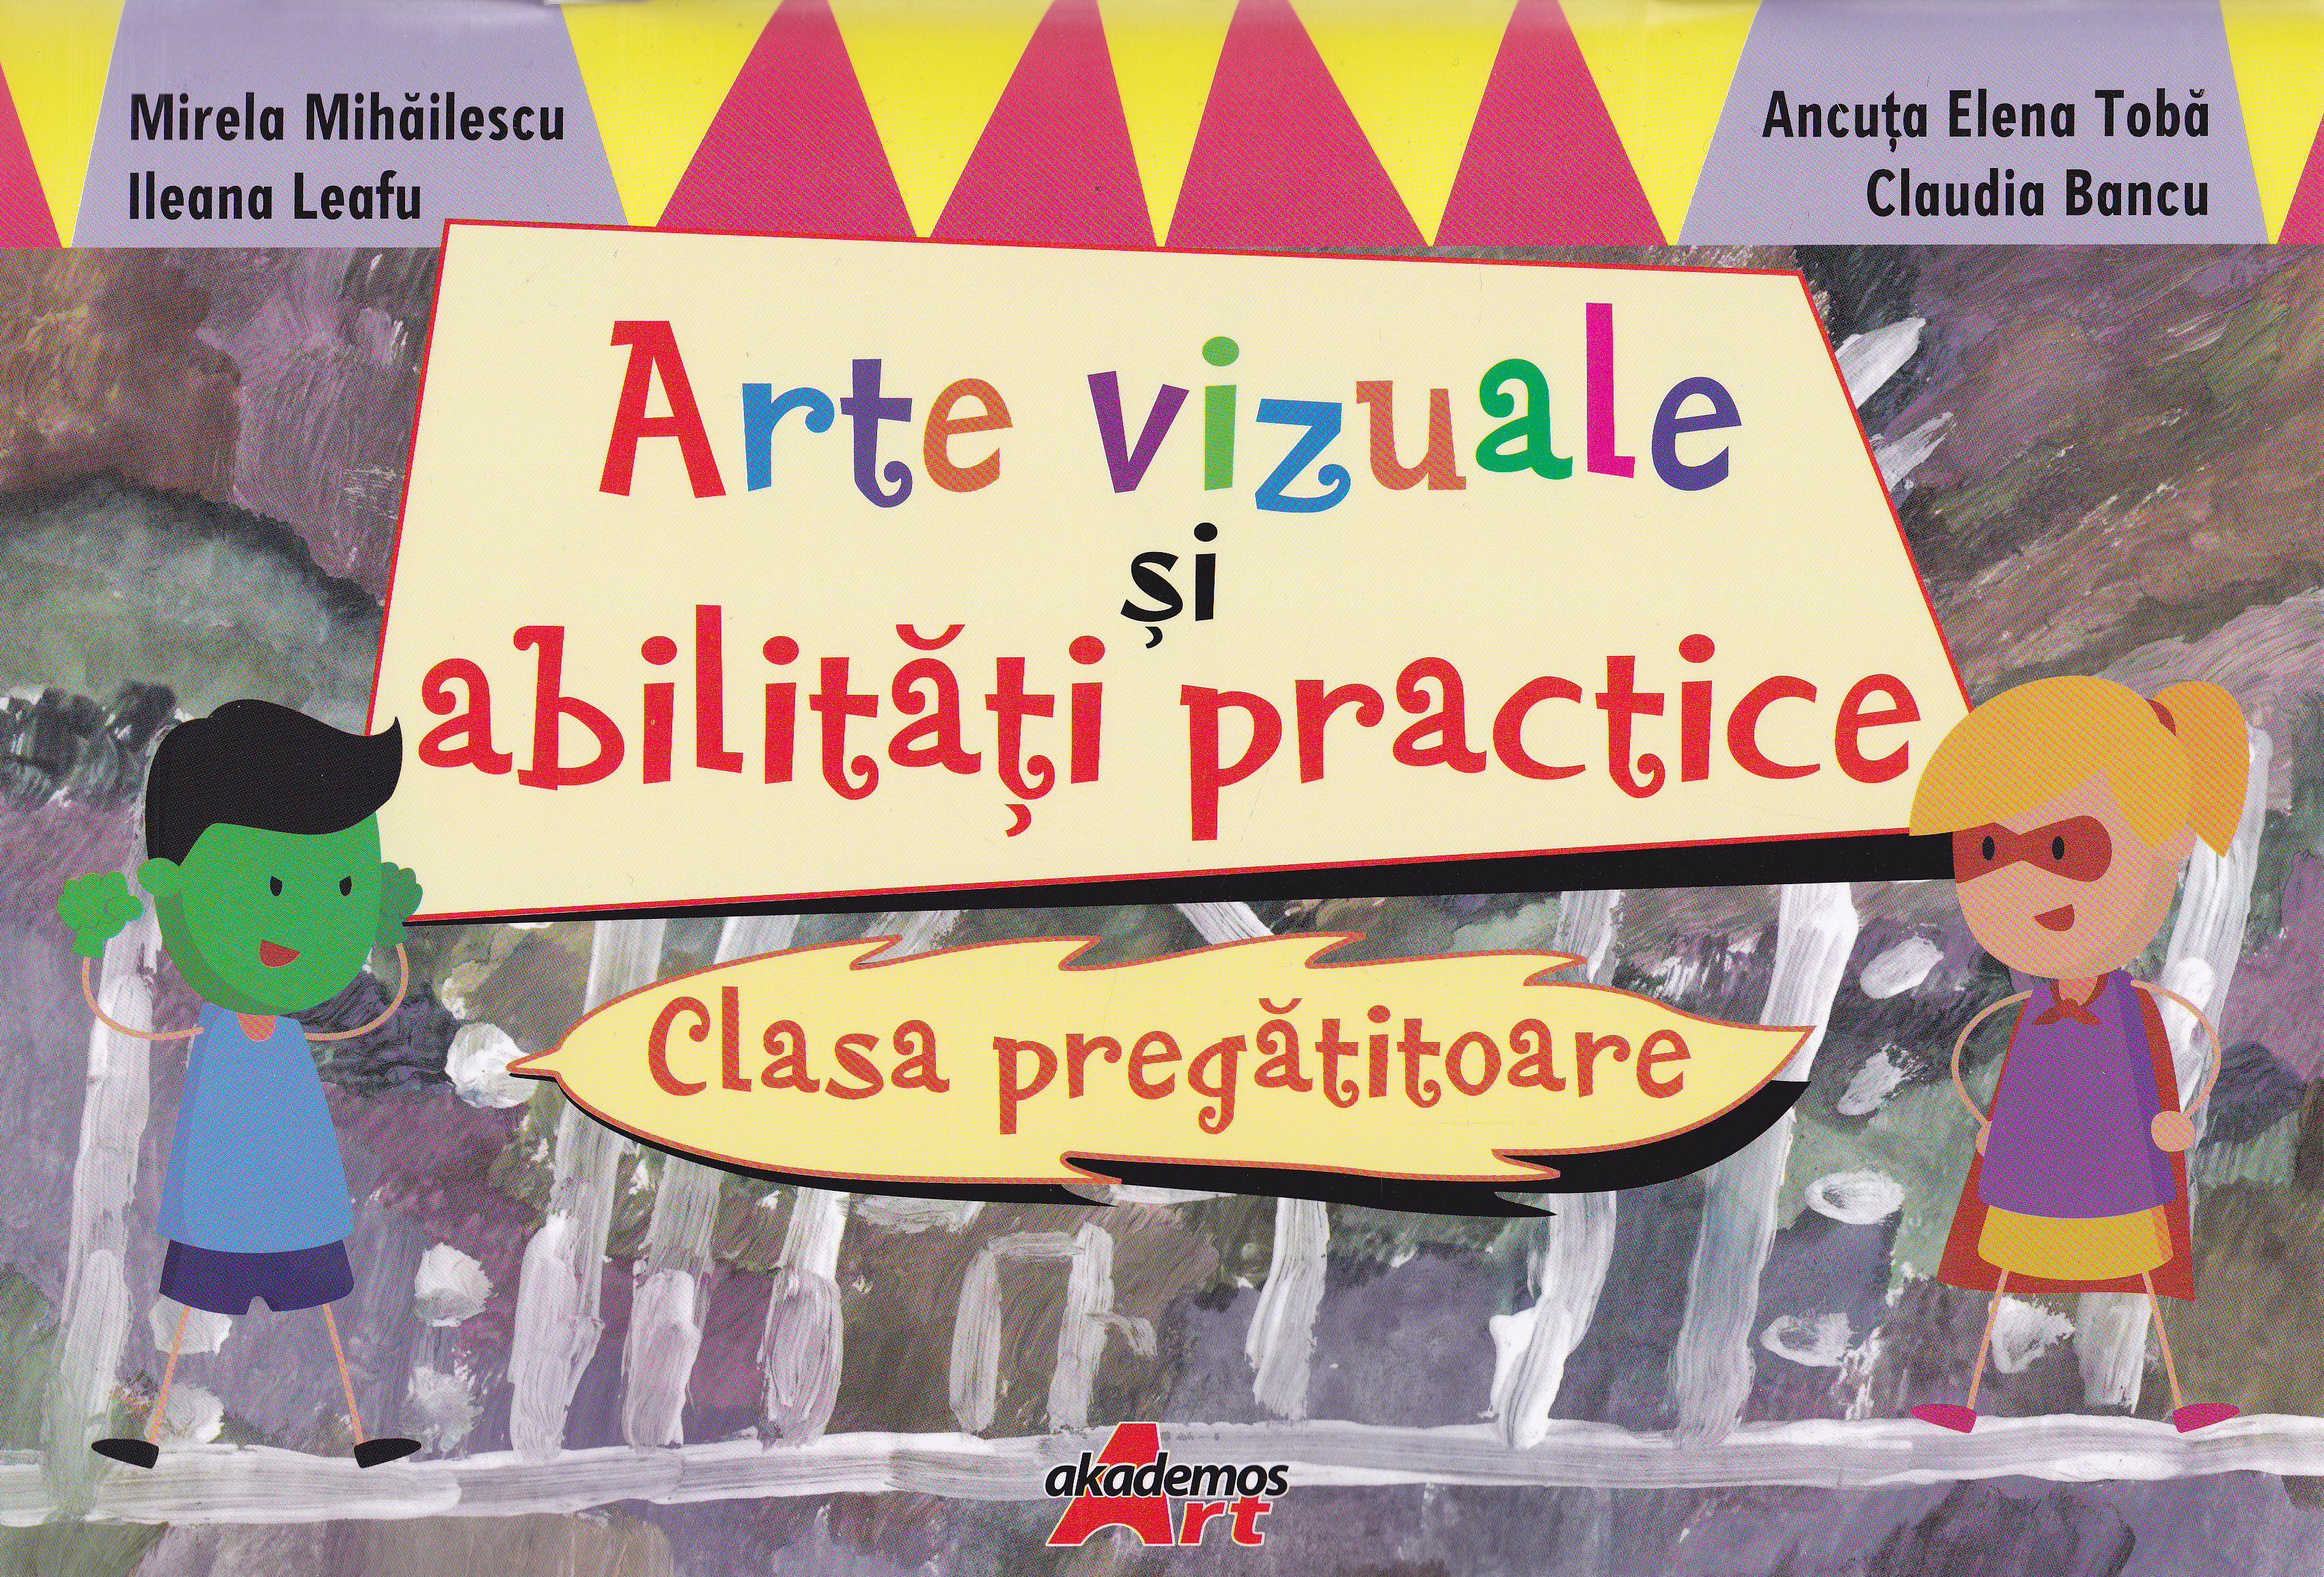 Arte vizuale si abilitati practice Clasa pregatitoare - Mirela Mihailescu